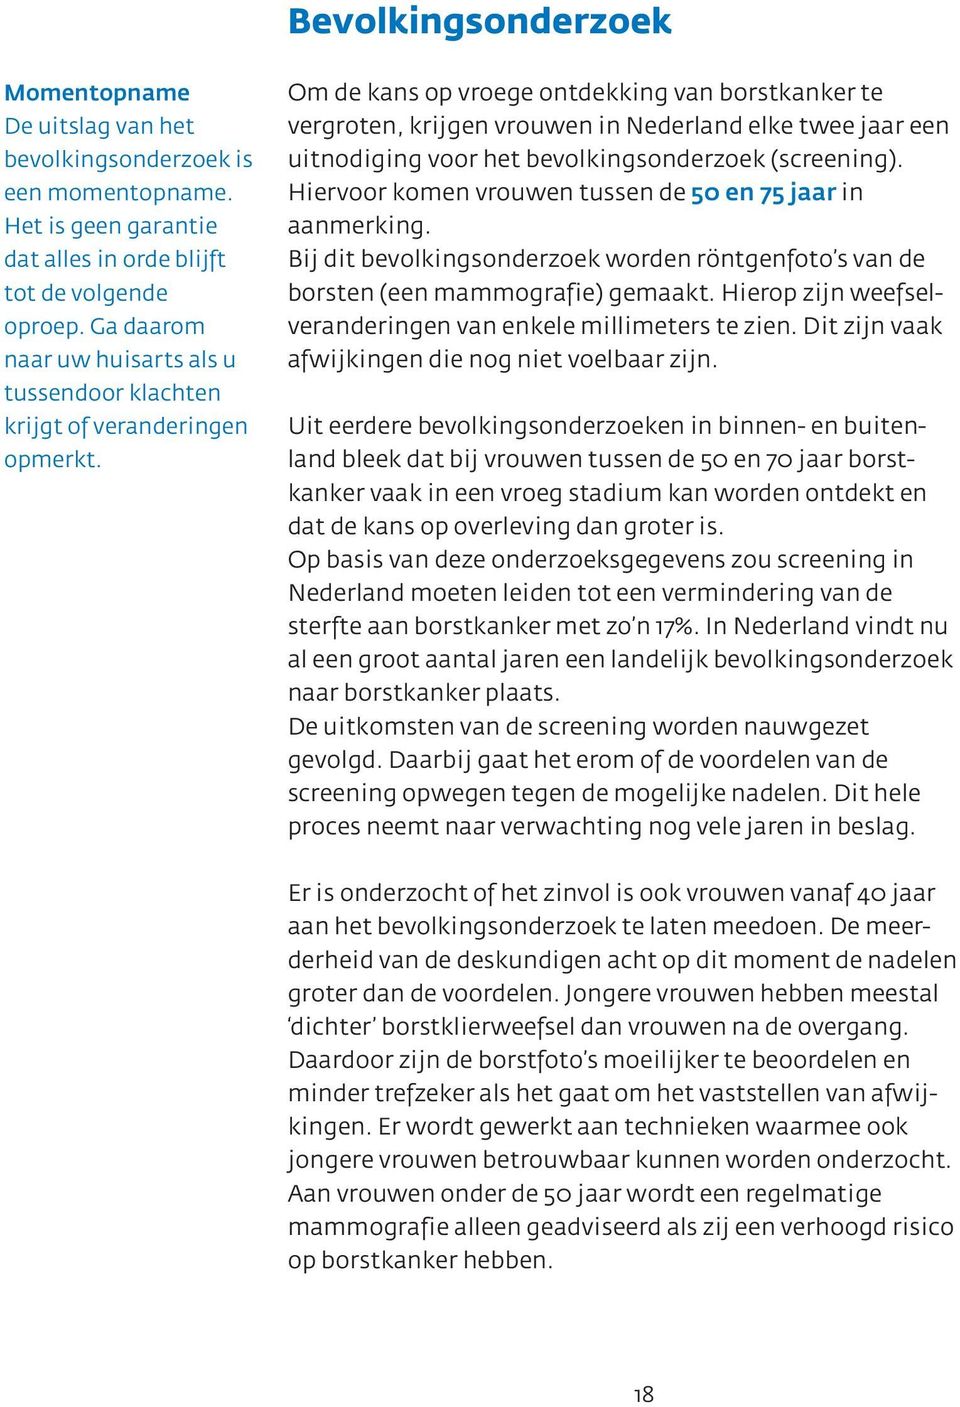 Om de kans op vroege ontdekking van borstkanker te vergroten, krijgen vrouwen in Nederland elke twee jaar een uitnodiging voor het bevolkingsonderzoek (screening).